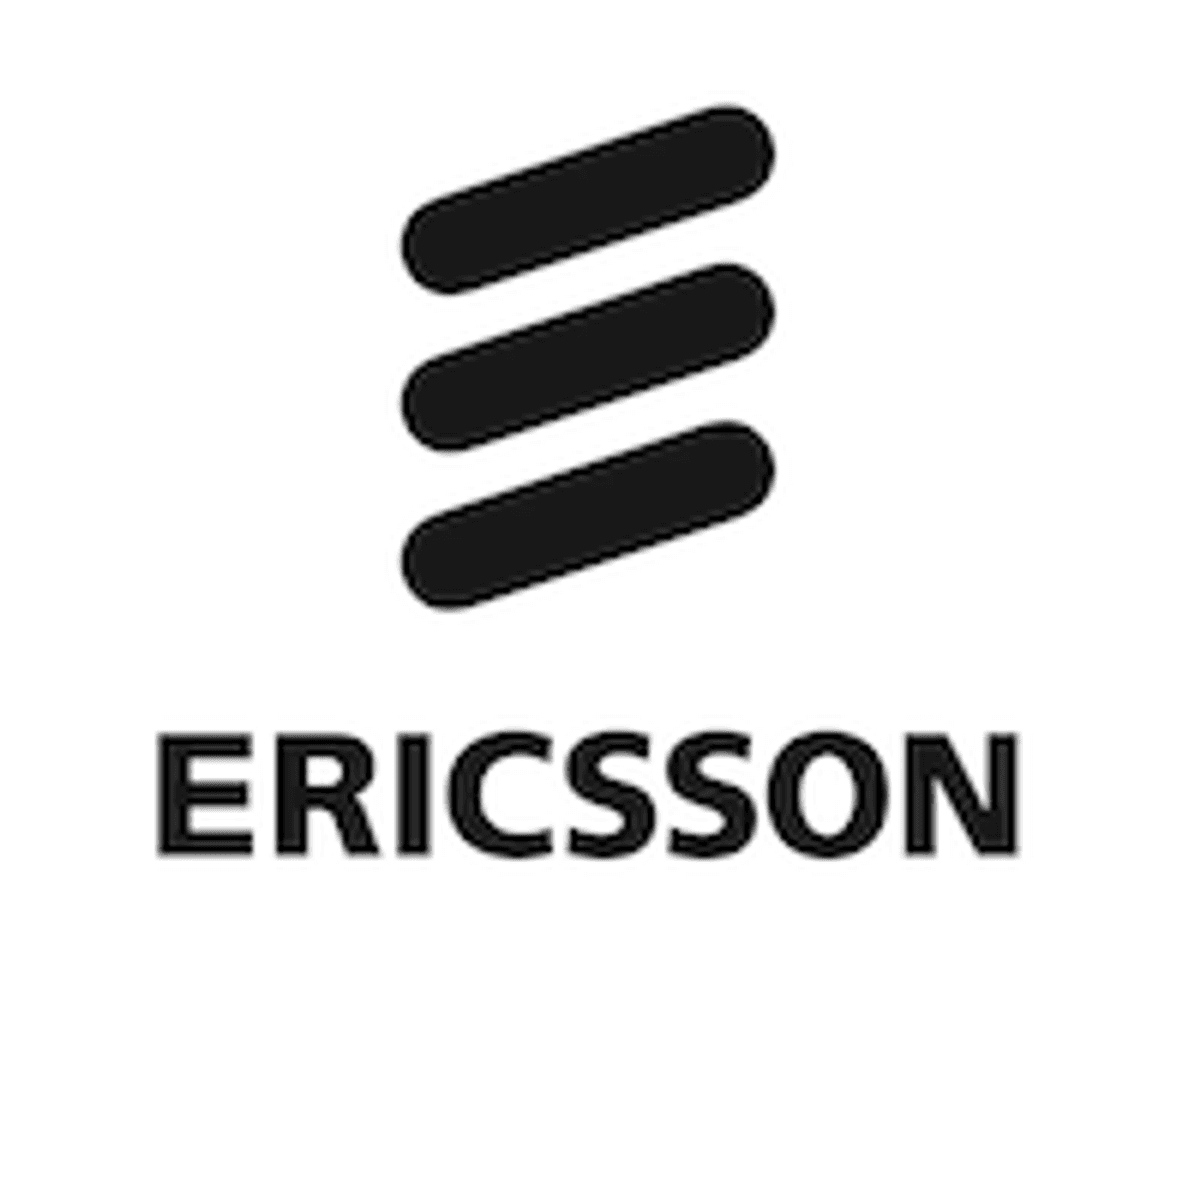 Ericsson: Huawei-ban kan onze Chinese activiteiten in gevaar brengen image